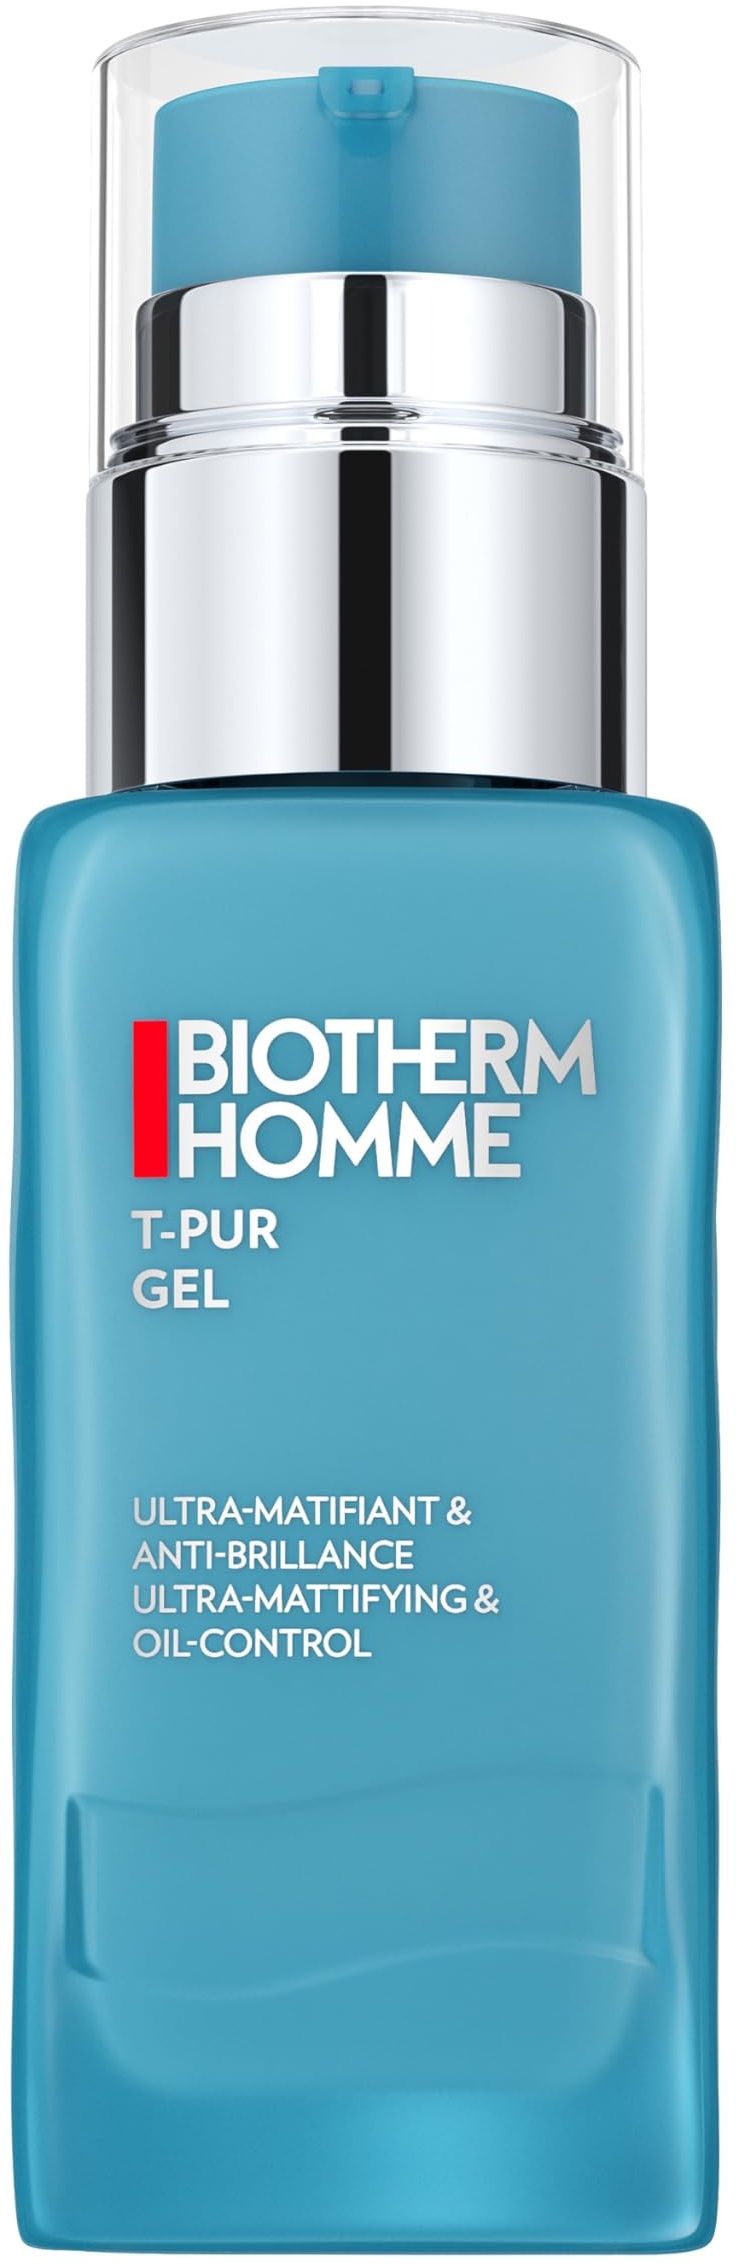 BIOTHERM Homme T-PUR Gel, erfrischendes Gesichtsgel für Männer, mattierende Tagespflege mit Meeresmineralien, für ein verfeinertes Hautbild und einen ebenmäßigen Teint, 50 ml